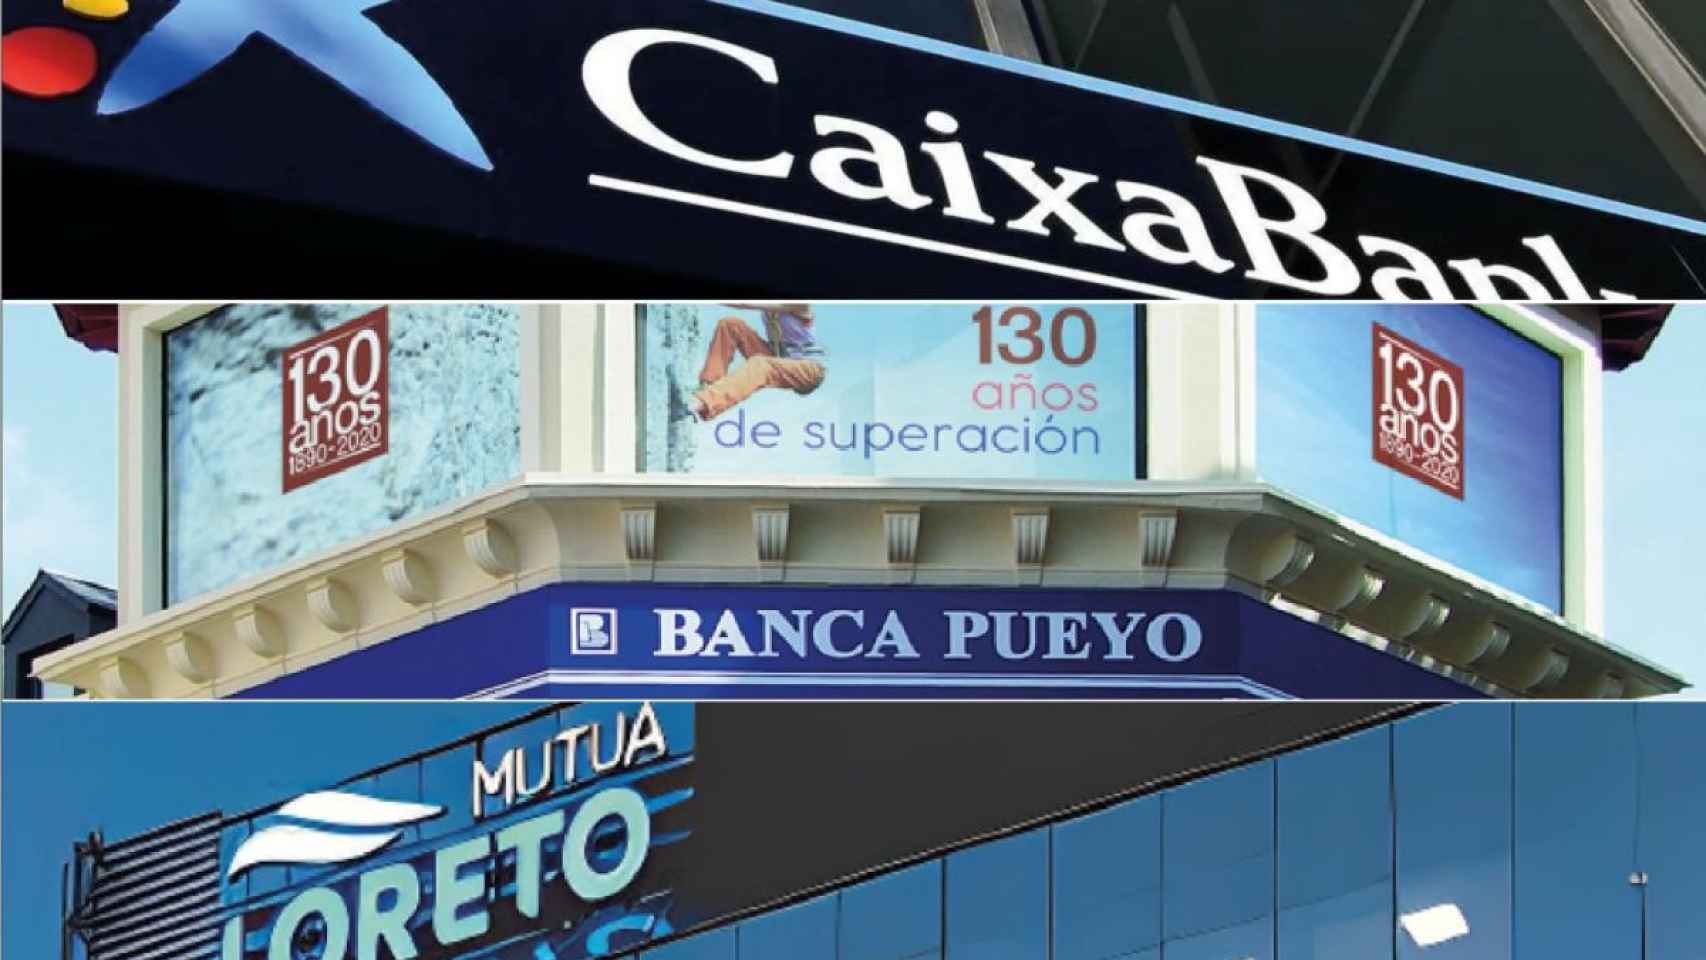 Los planes de pensiones de Caixabank, Loreto Mutua y Banca Pueyo